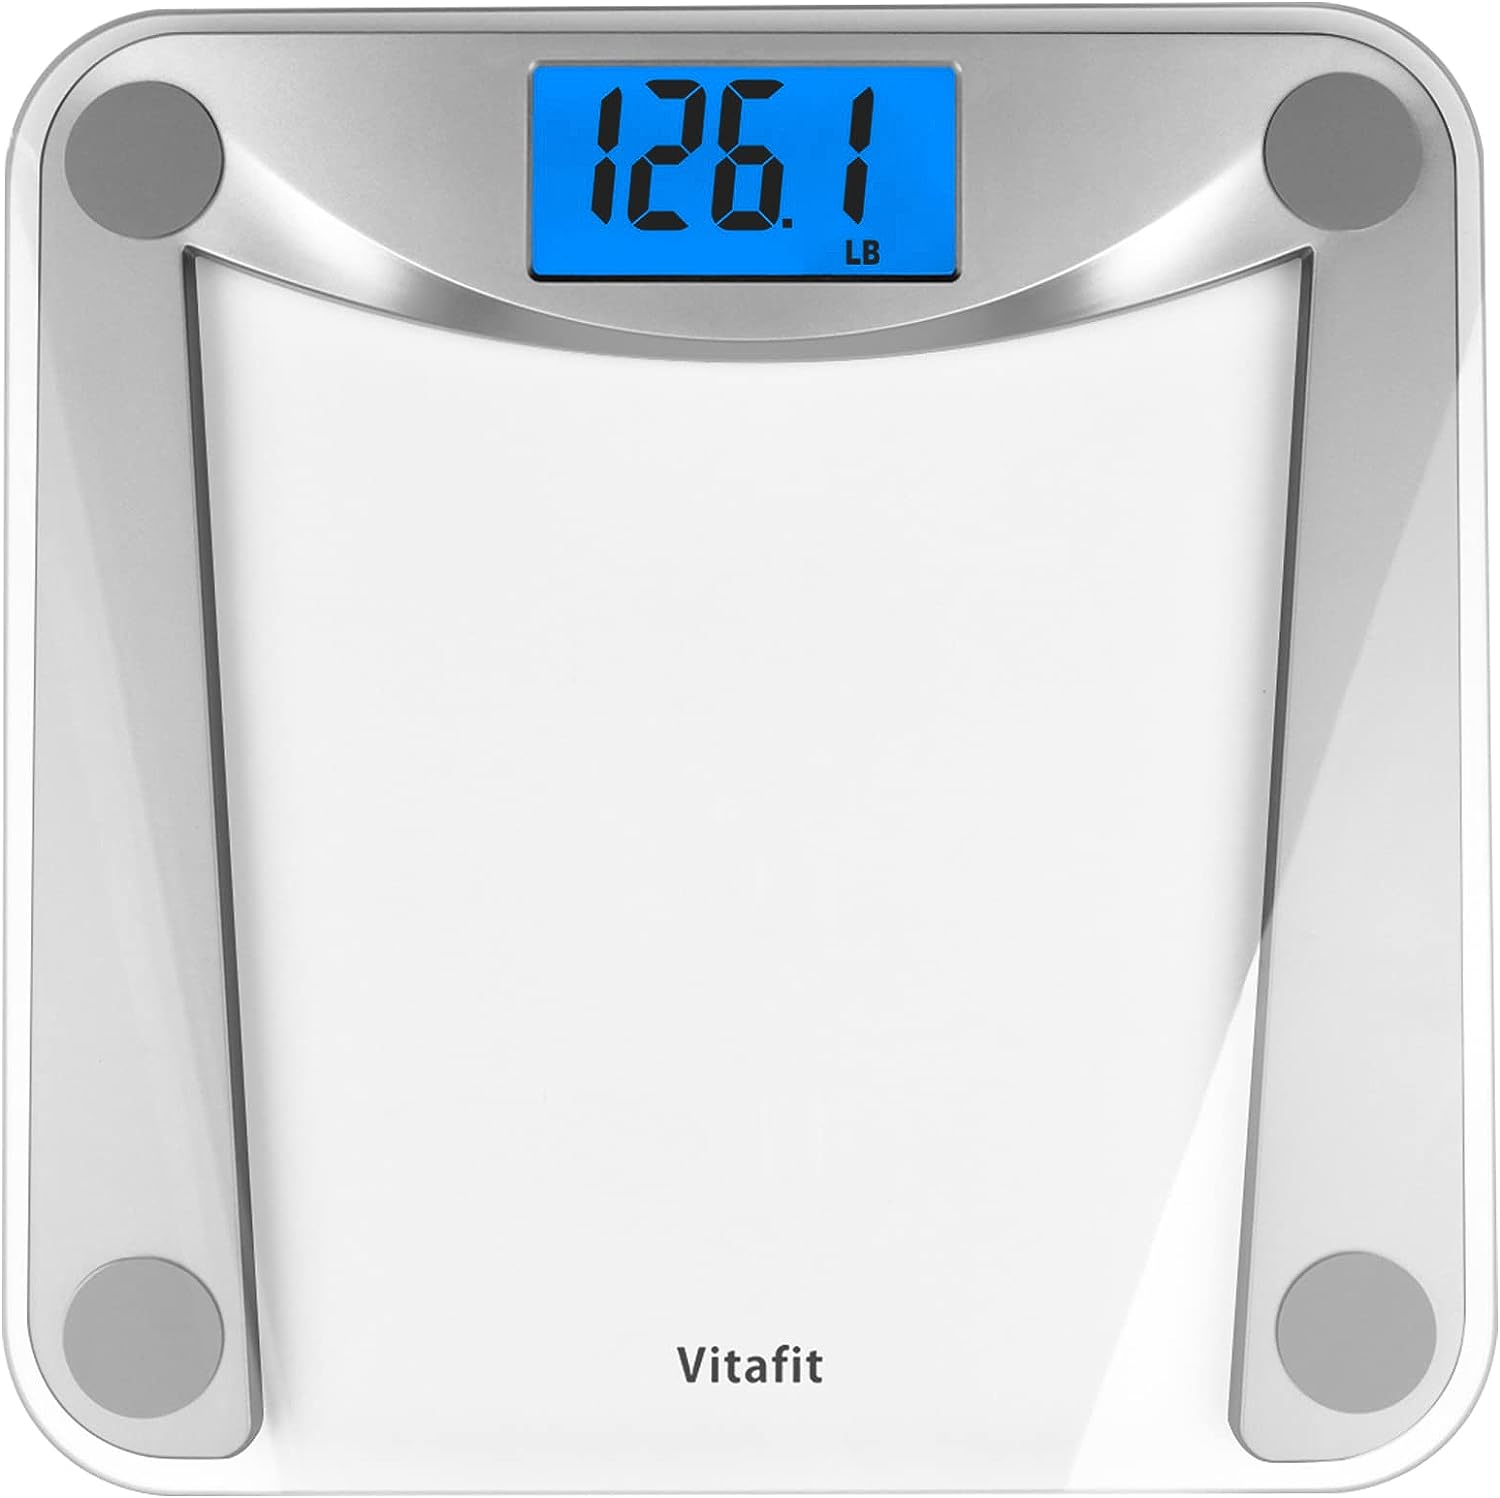 Báscula digital de baño para peso corporal, pesaje profesional desde 2001, LCD